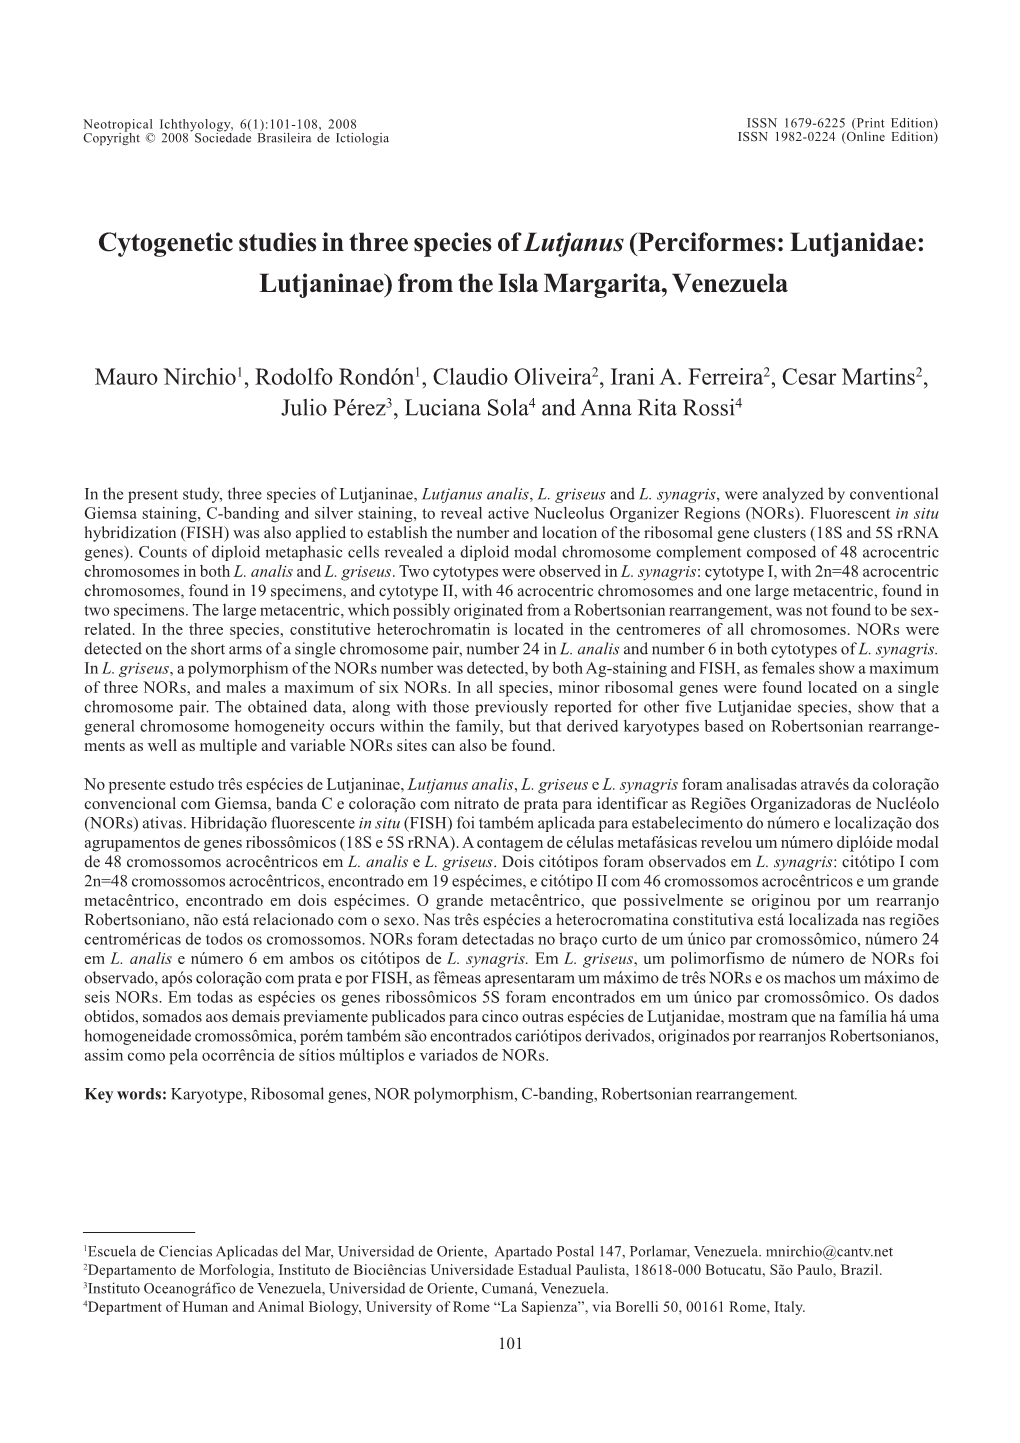 Cytogenetic Studies in Three Species of Lutjanus (Perciformes: Lutjanidae: Lutjaninae) from the Isla Margarita, Venezuela